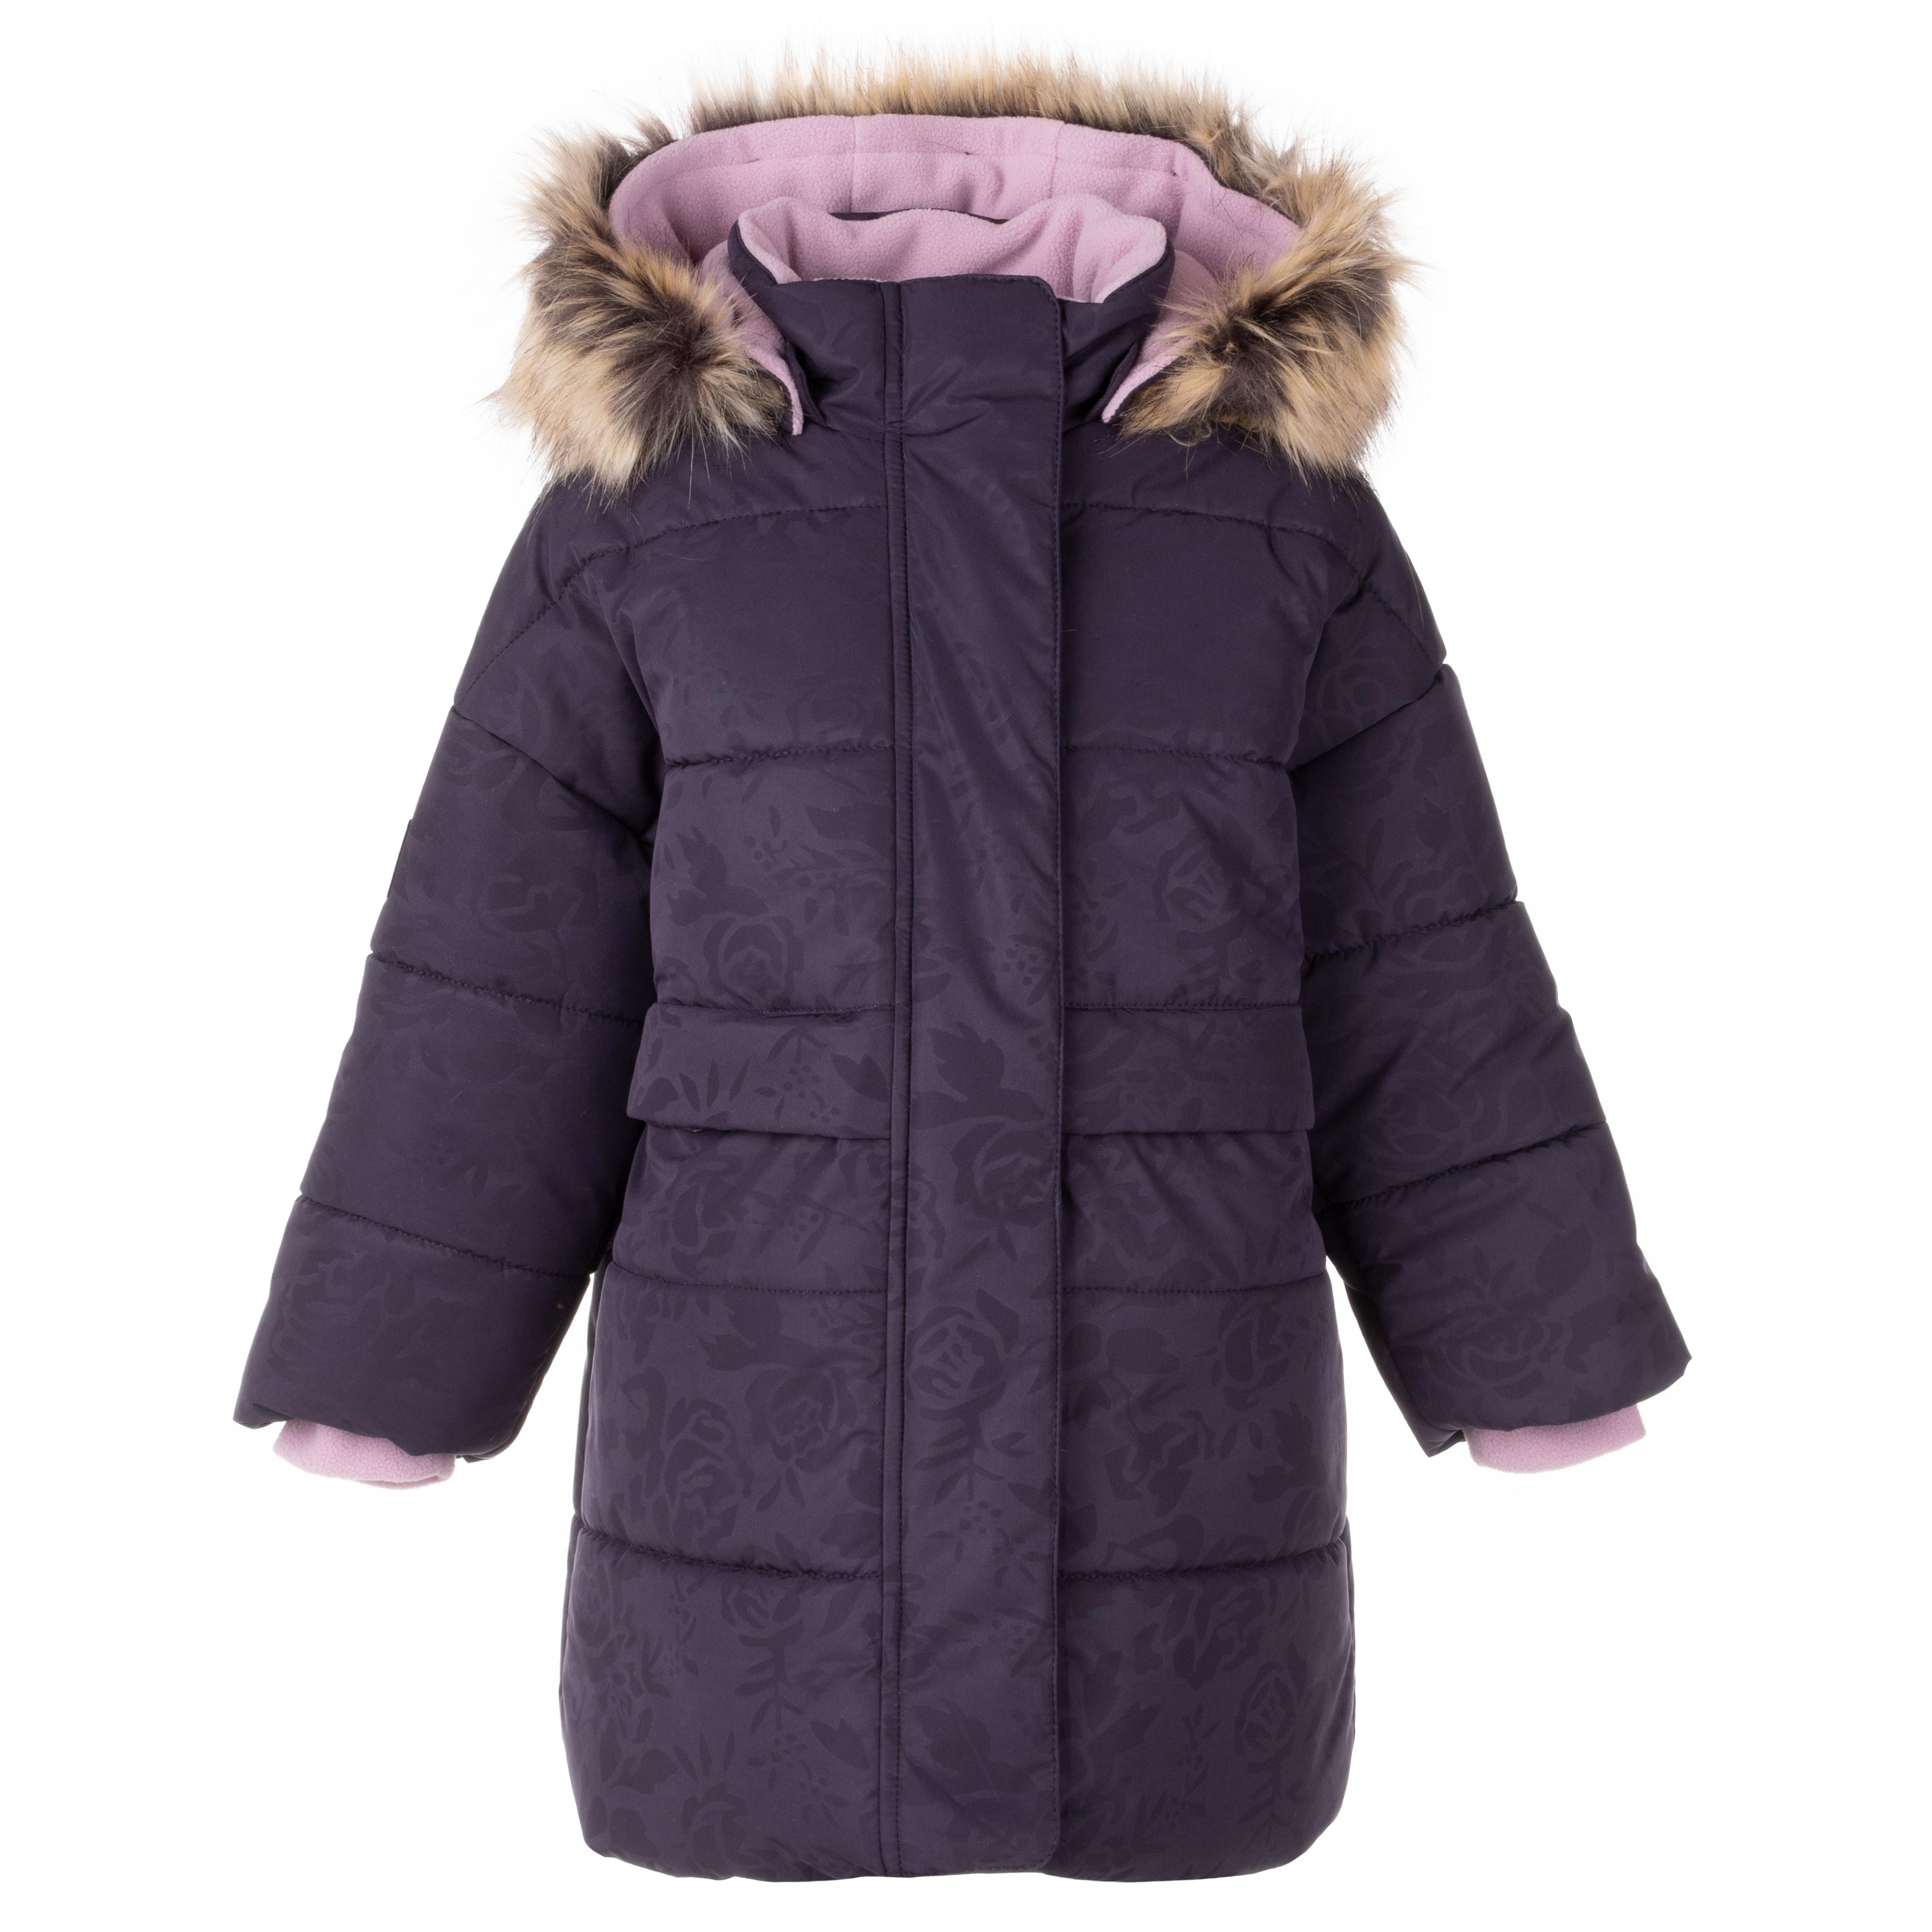 Пальто детское KERRY K23433, фиолетовый, 134